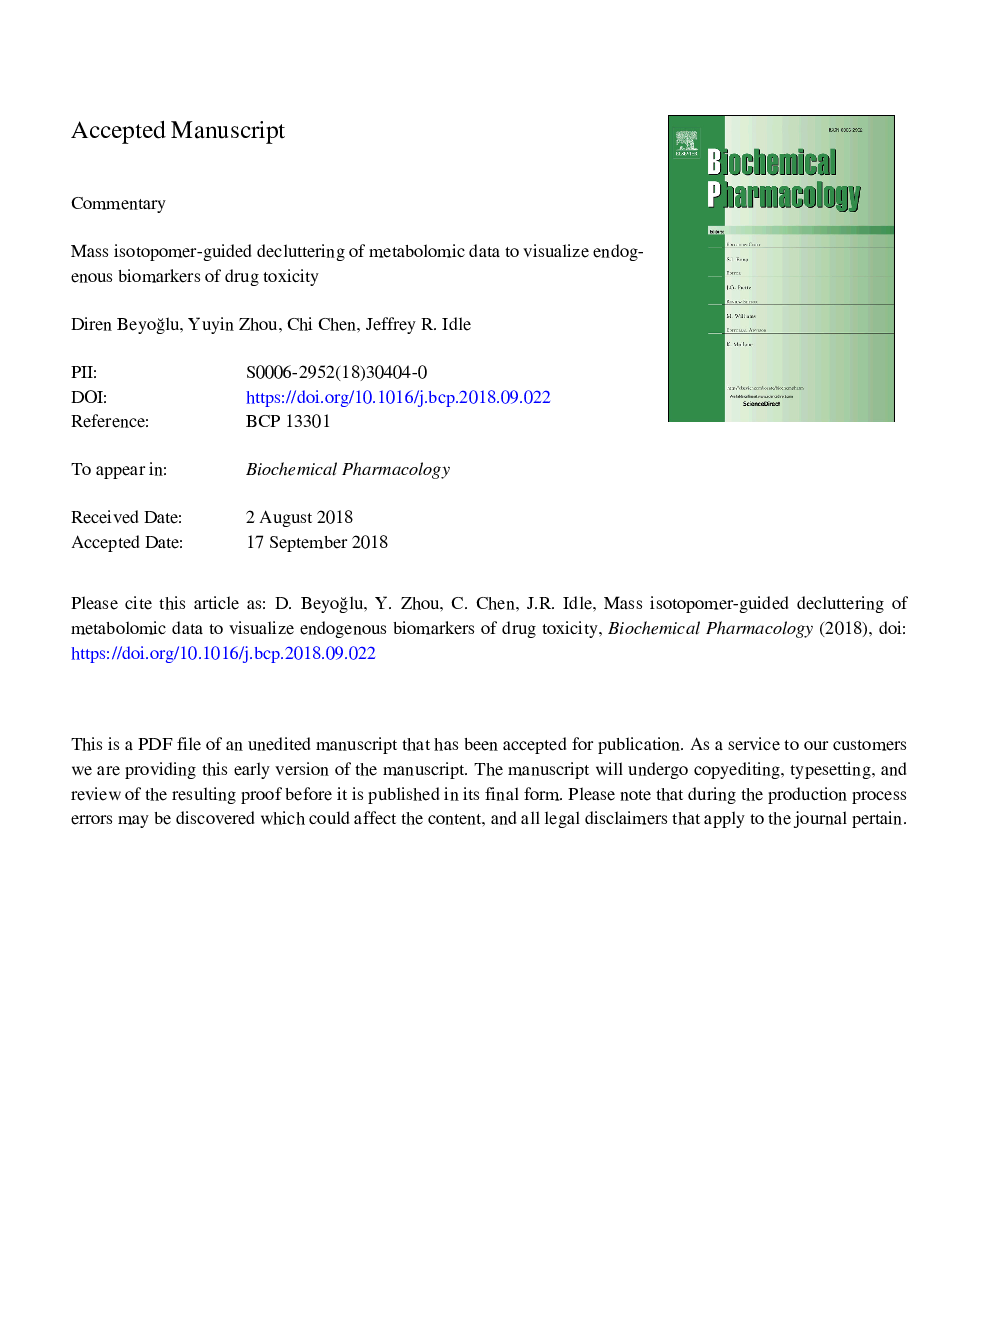 توزیع ایزوتوپومر با استفاده از تجزیه و تحلیل اطلاعات متابولومیک برای تجسم بیومارکرهای درونزای سمیت مواد مخدر